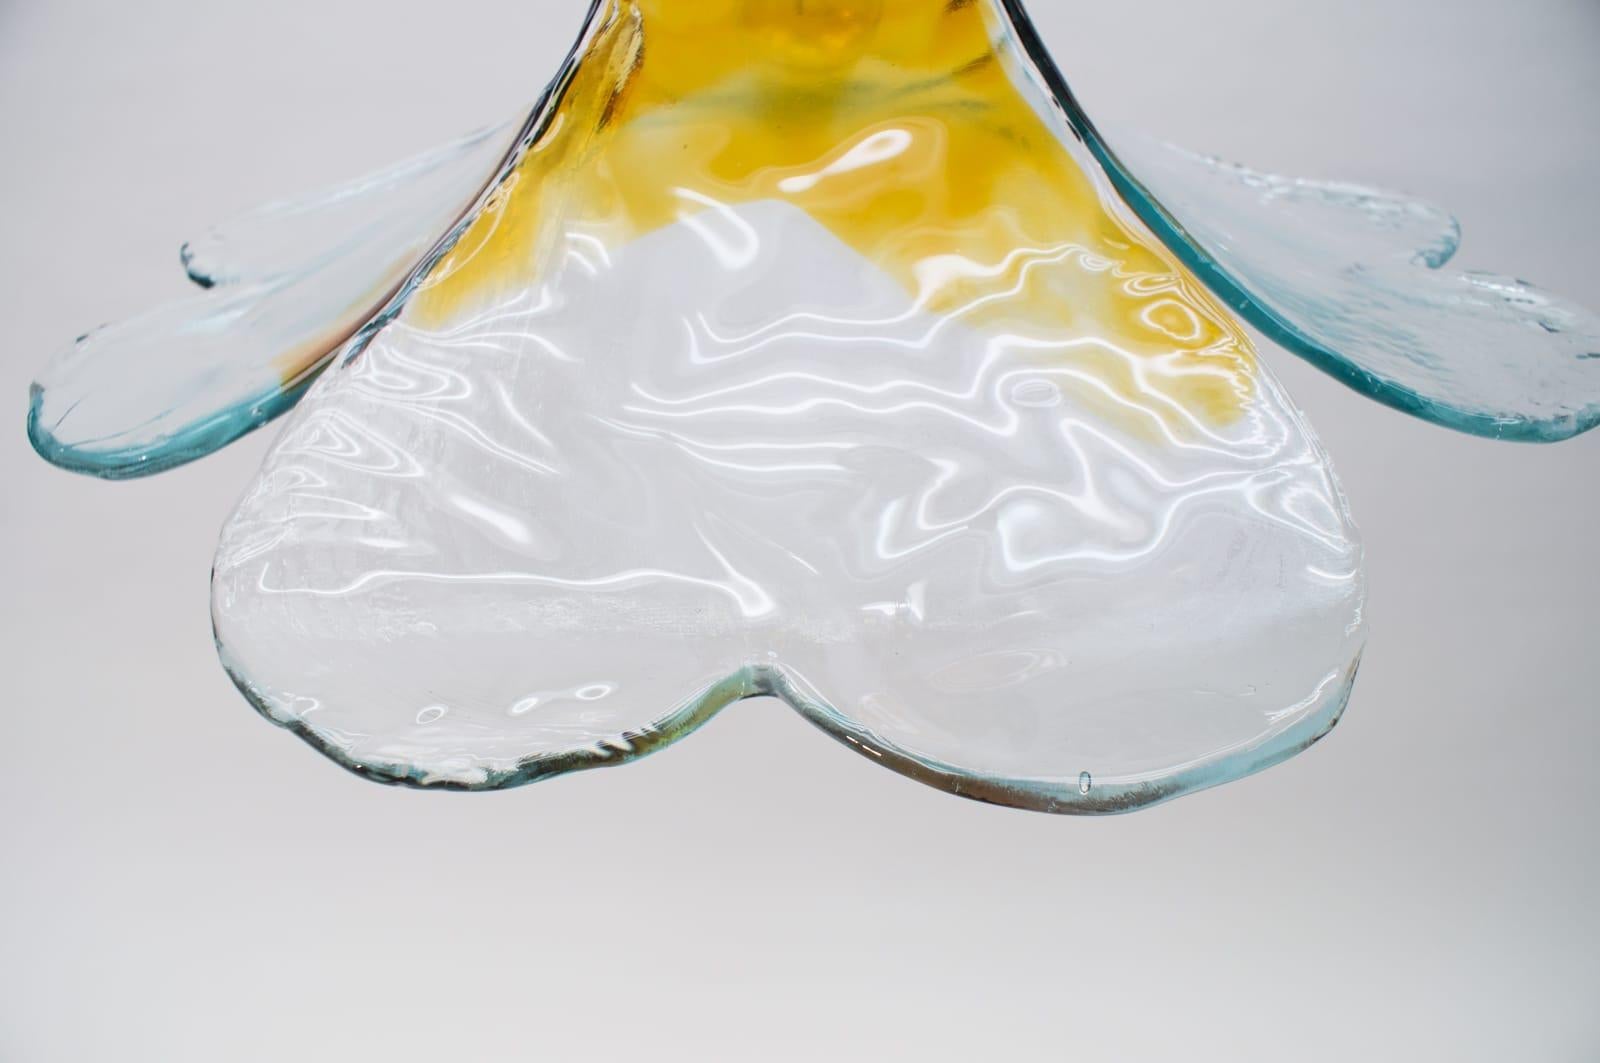 Brass Carlo Nason Mazzega Pendant Lamp for J.T. Kalmar in Murano Glass, 1970s For Sale